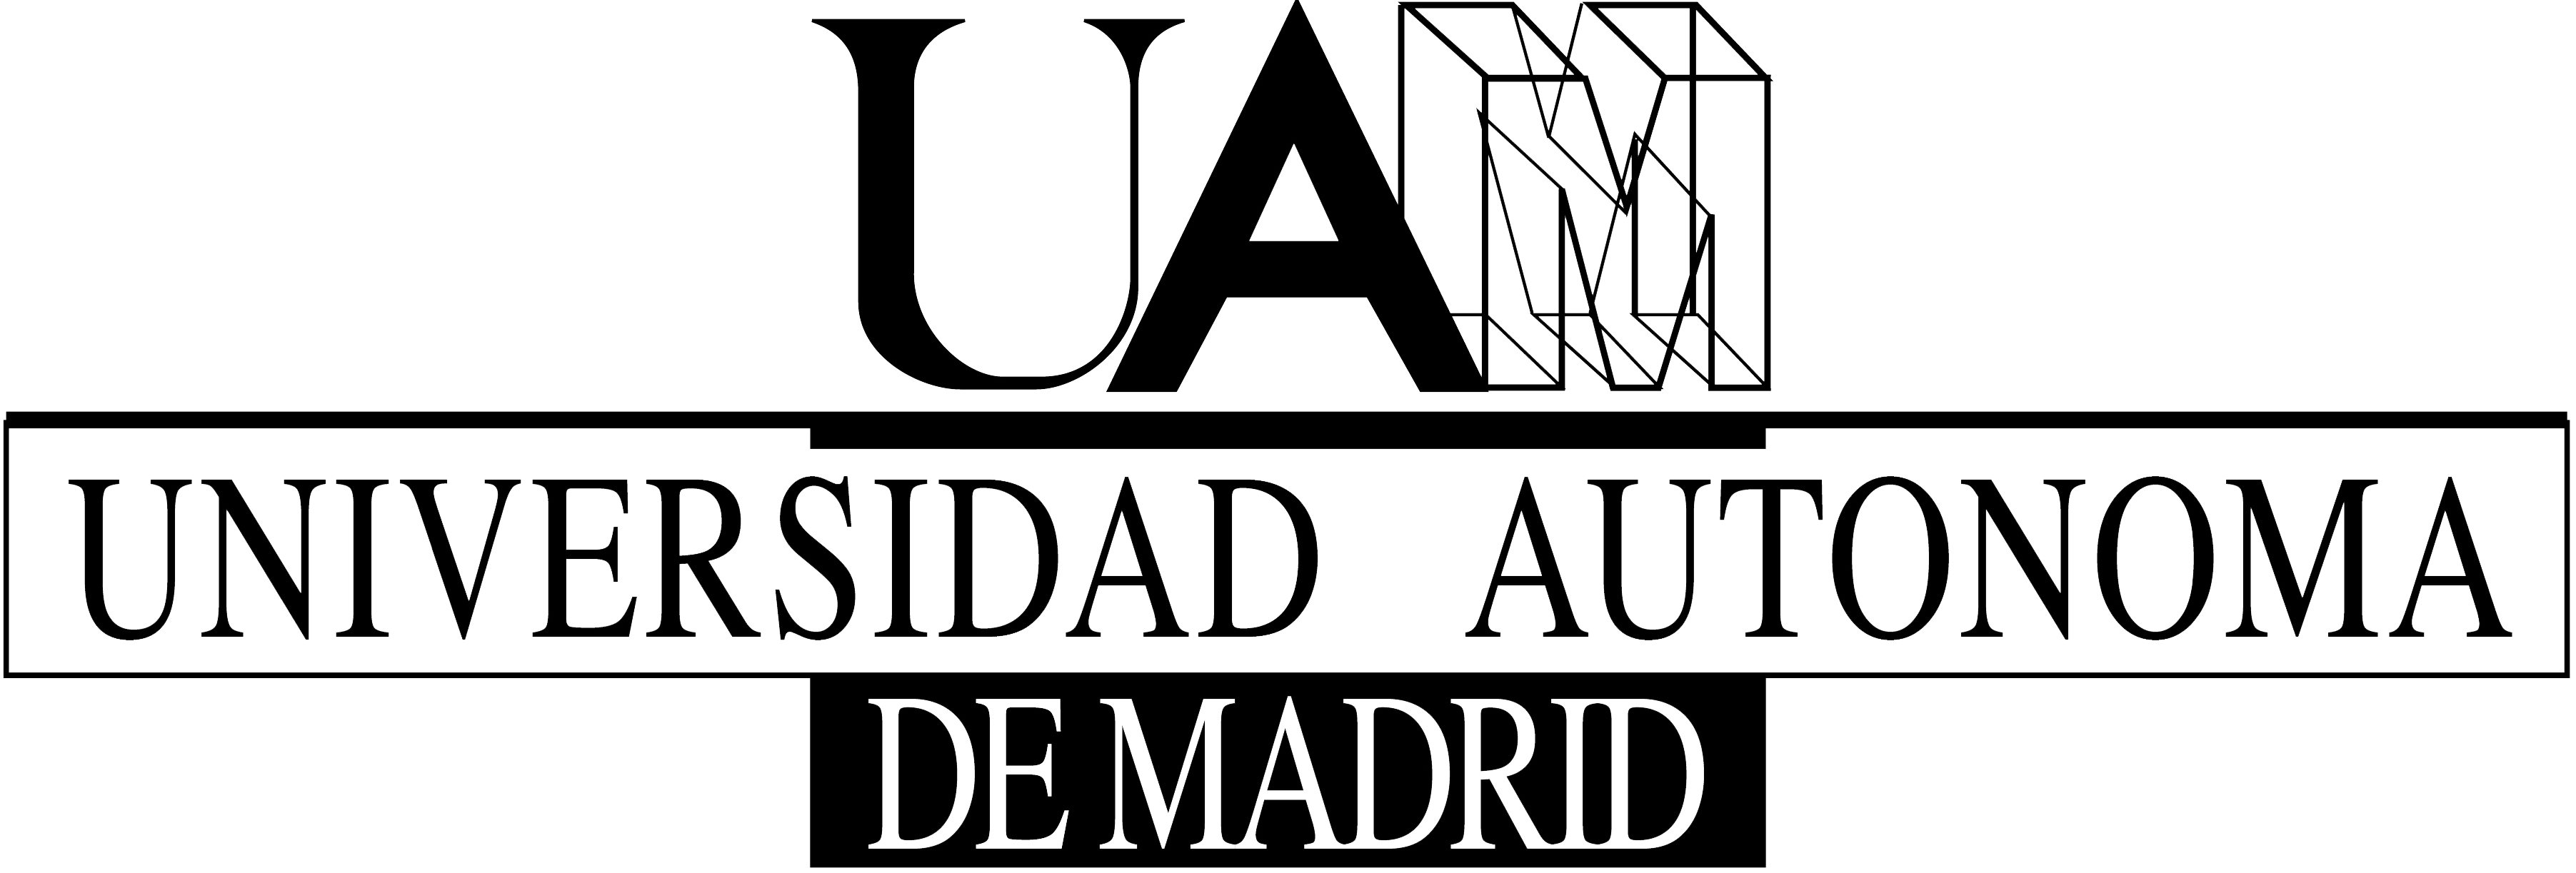 UAM Logo - Logo UAM. Emprendedurismo. Home decor, Decor